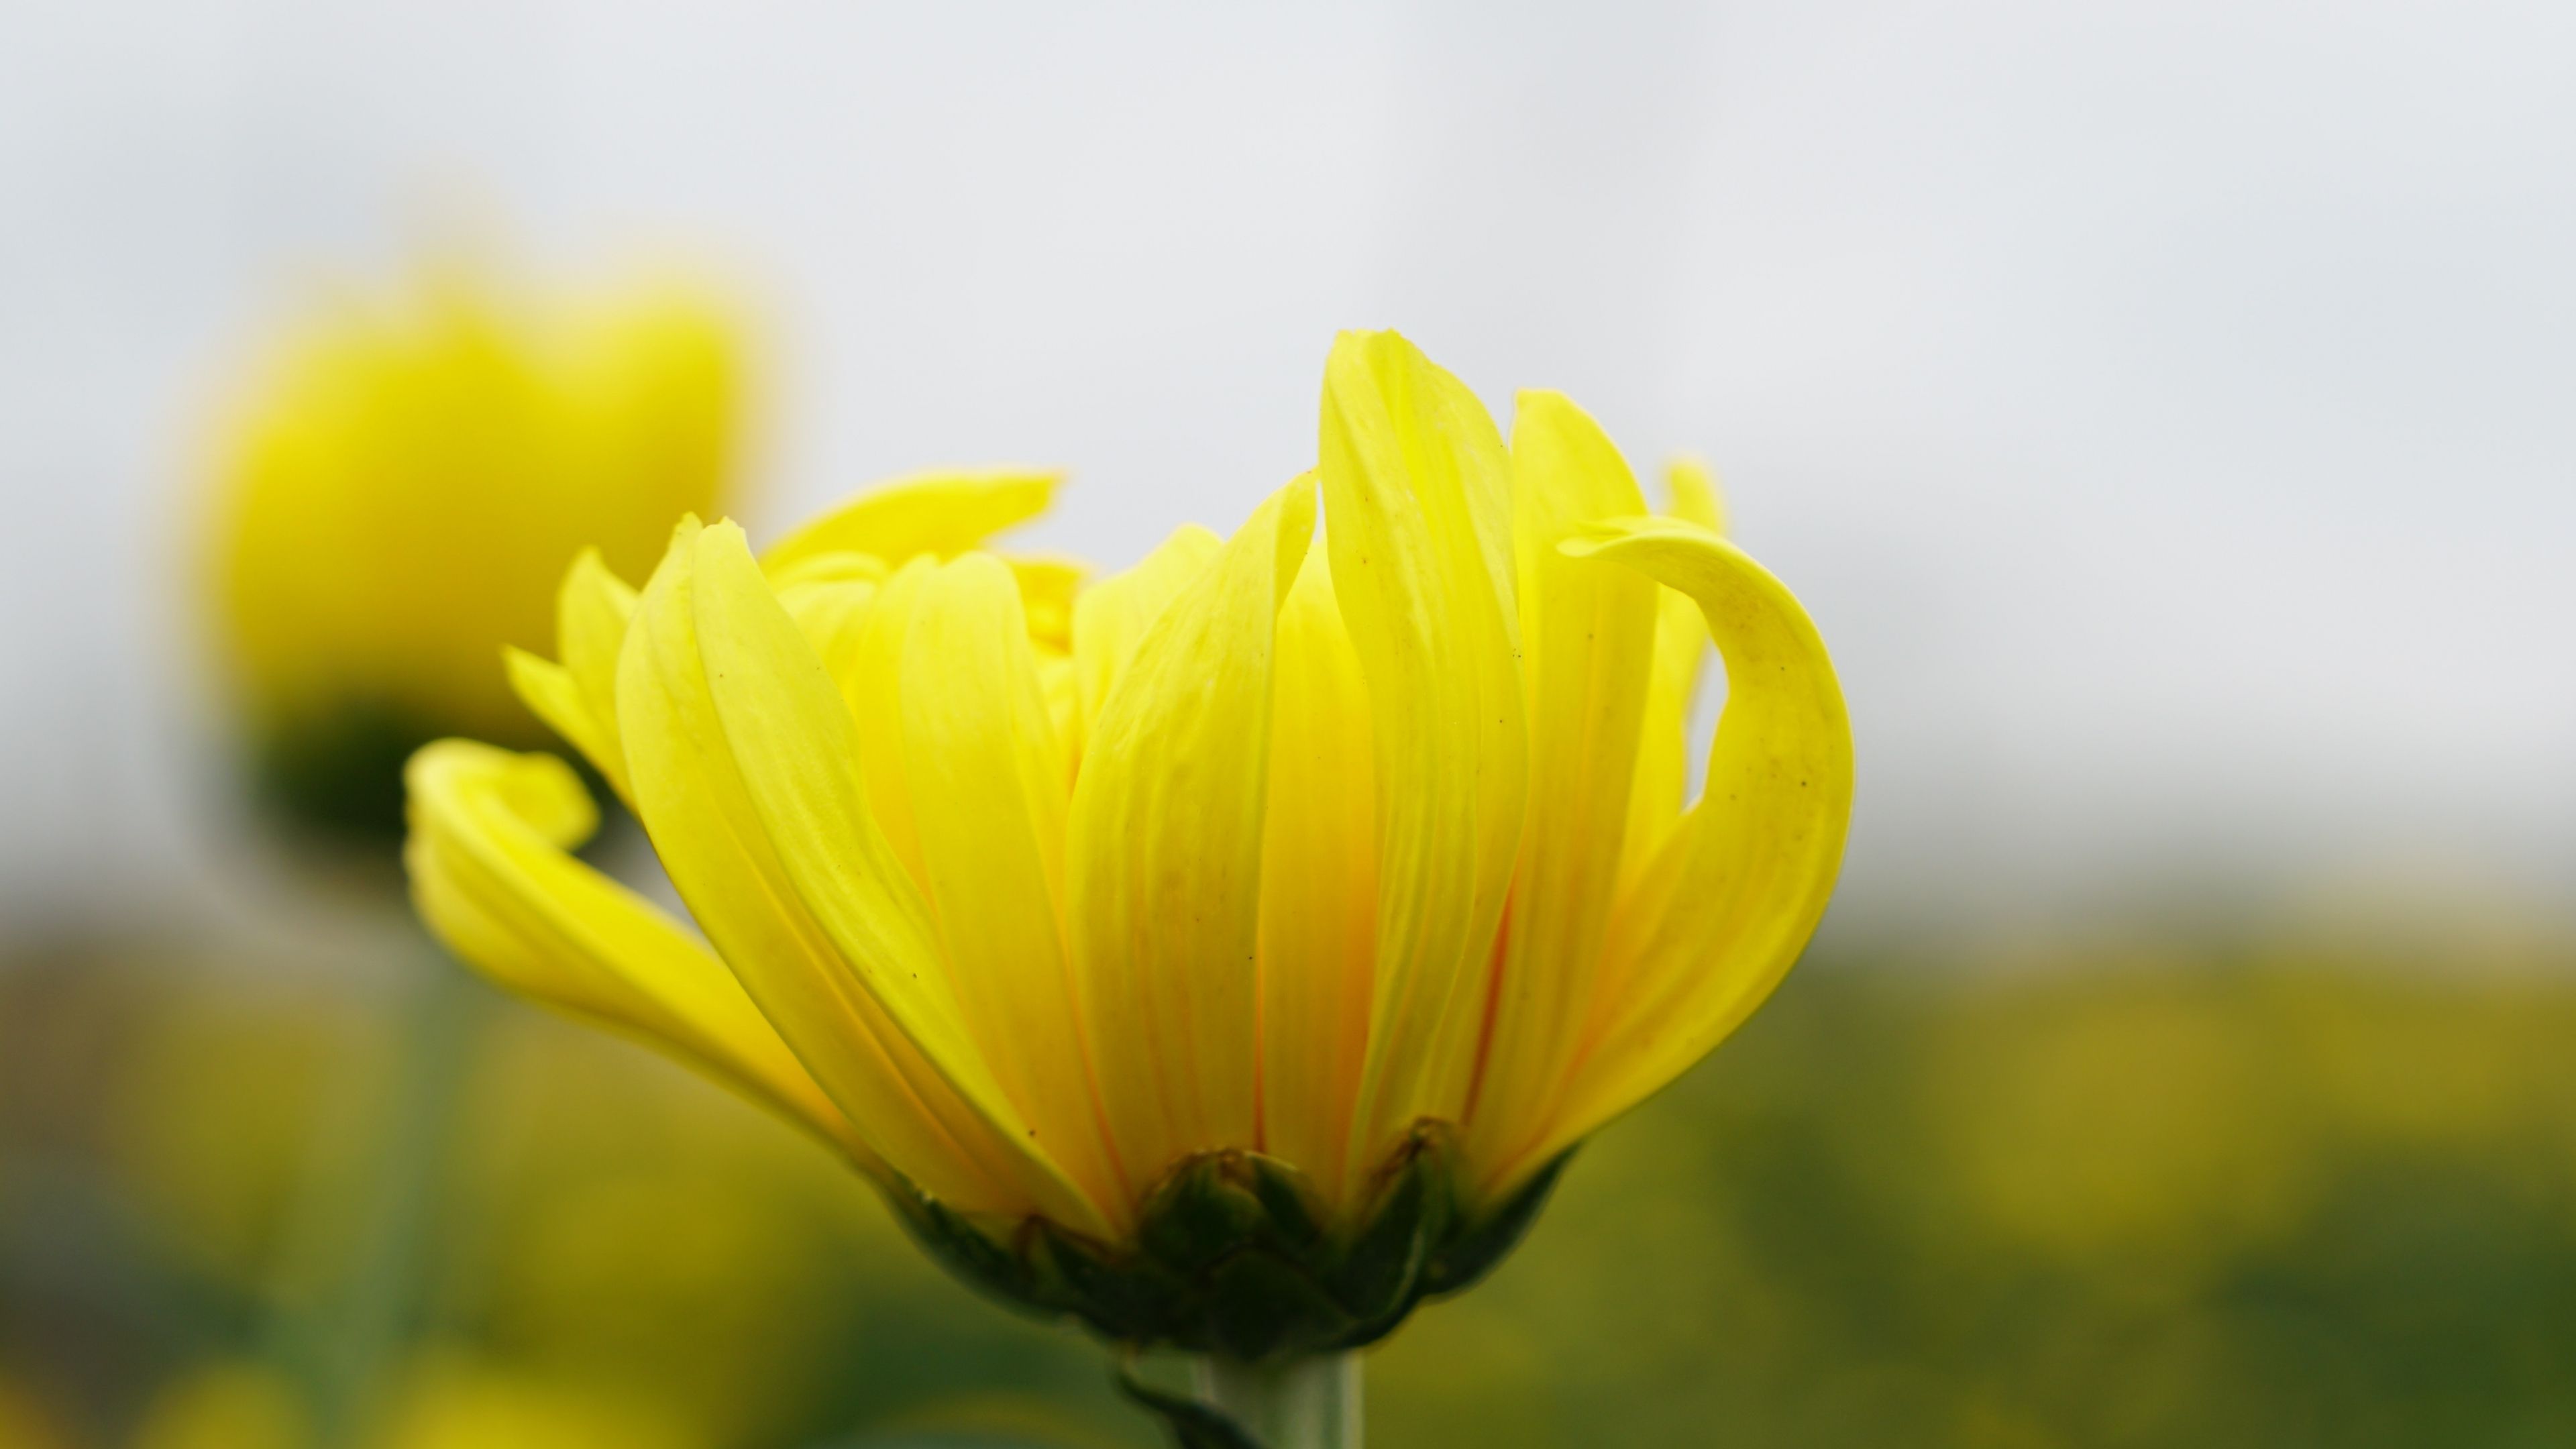 Download 3840x2160 wallpaper yellow flower, summer, blur, 4k, uhd 16: widescreen, 3840x2160 HD image, background, 5628